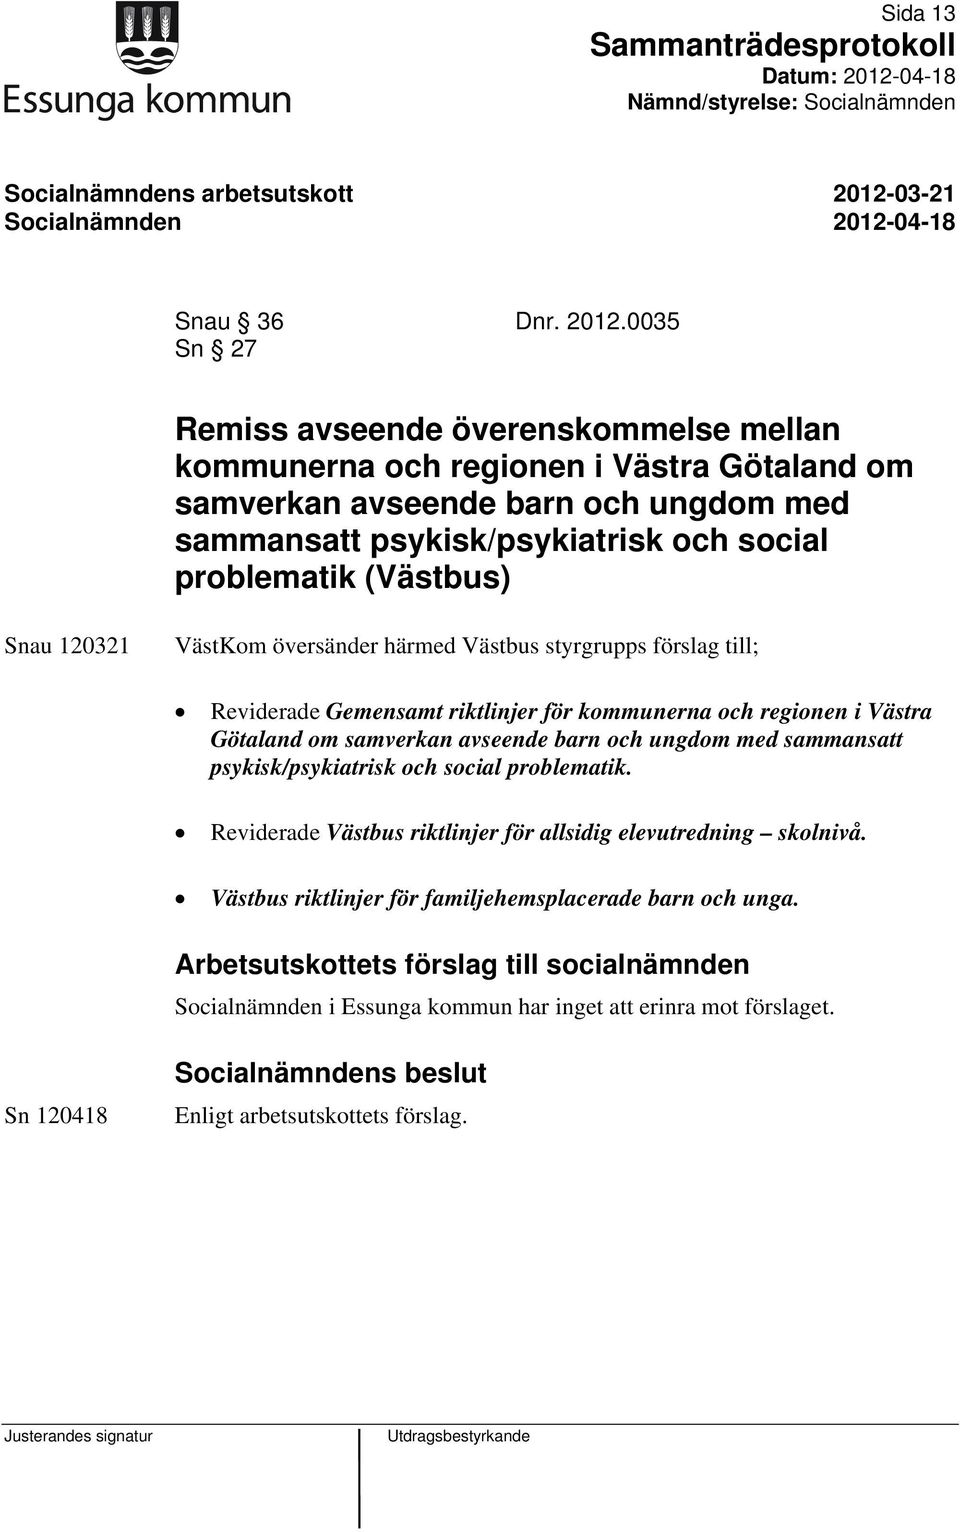 0035 Sn 27 Remiss avseende överenskommelse mellan kommunerna och regionen i Västra Götaland om samverkan avseende barn och ungdom med sammansatt psykisk/psykiatrisk och social